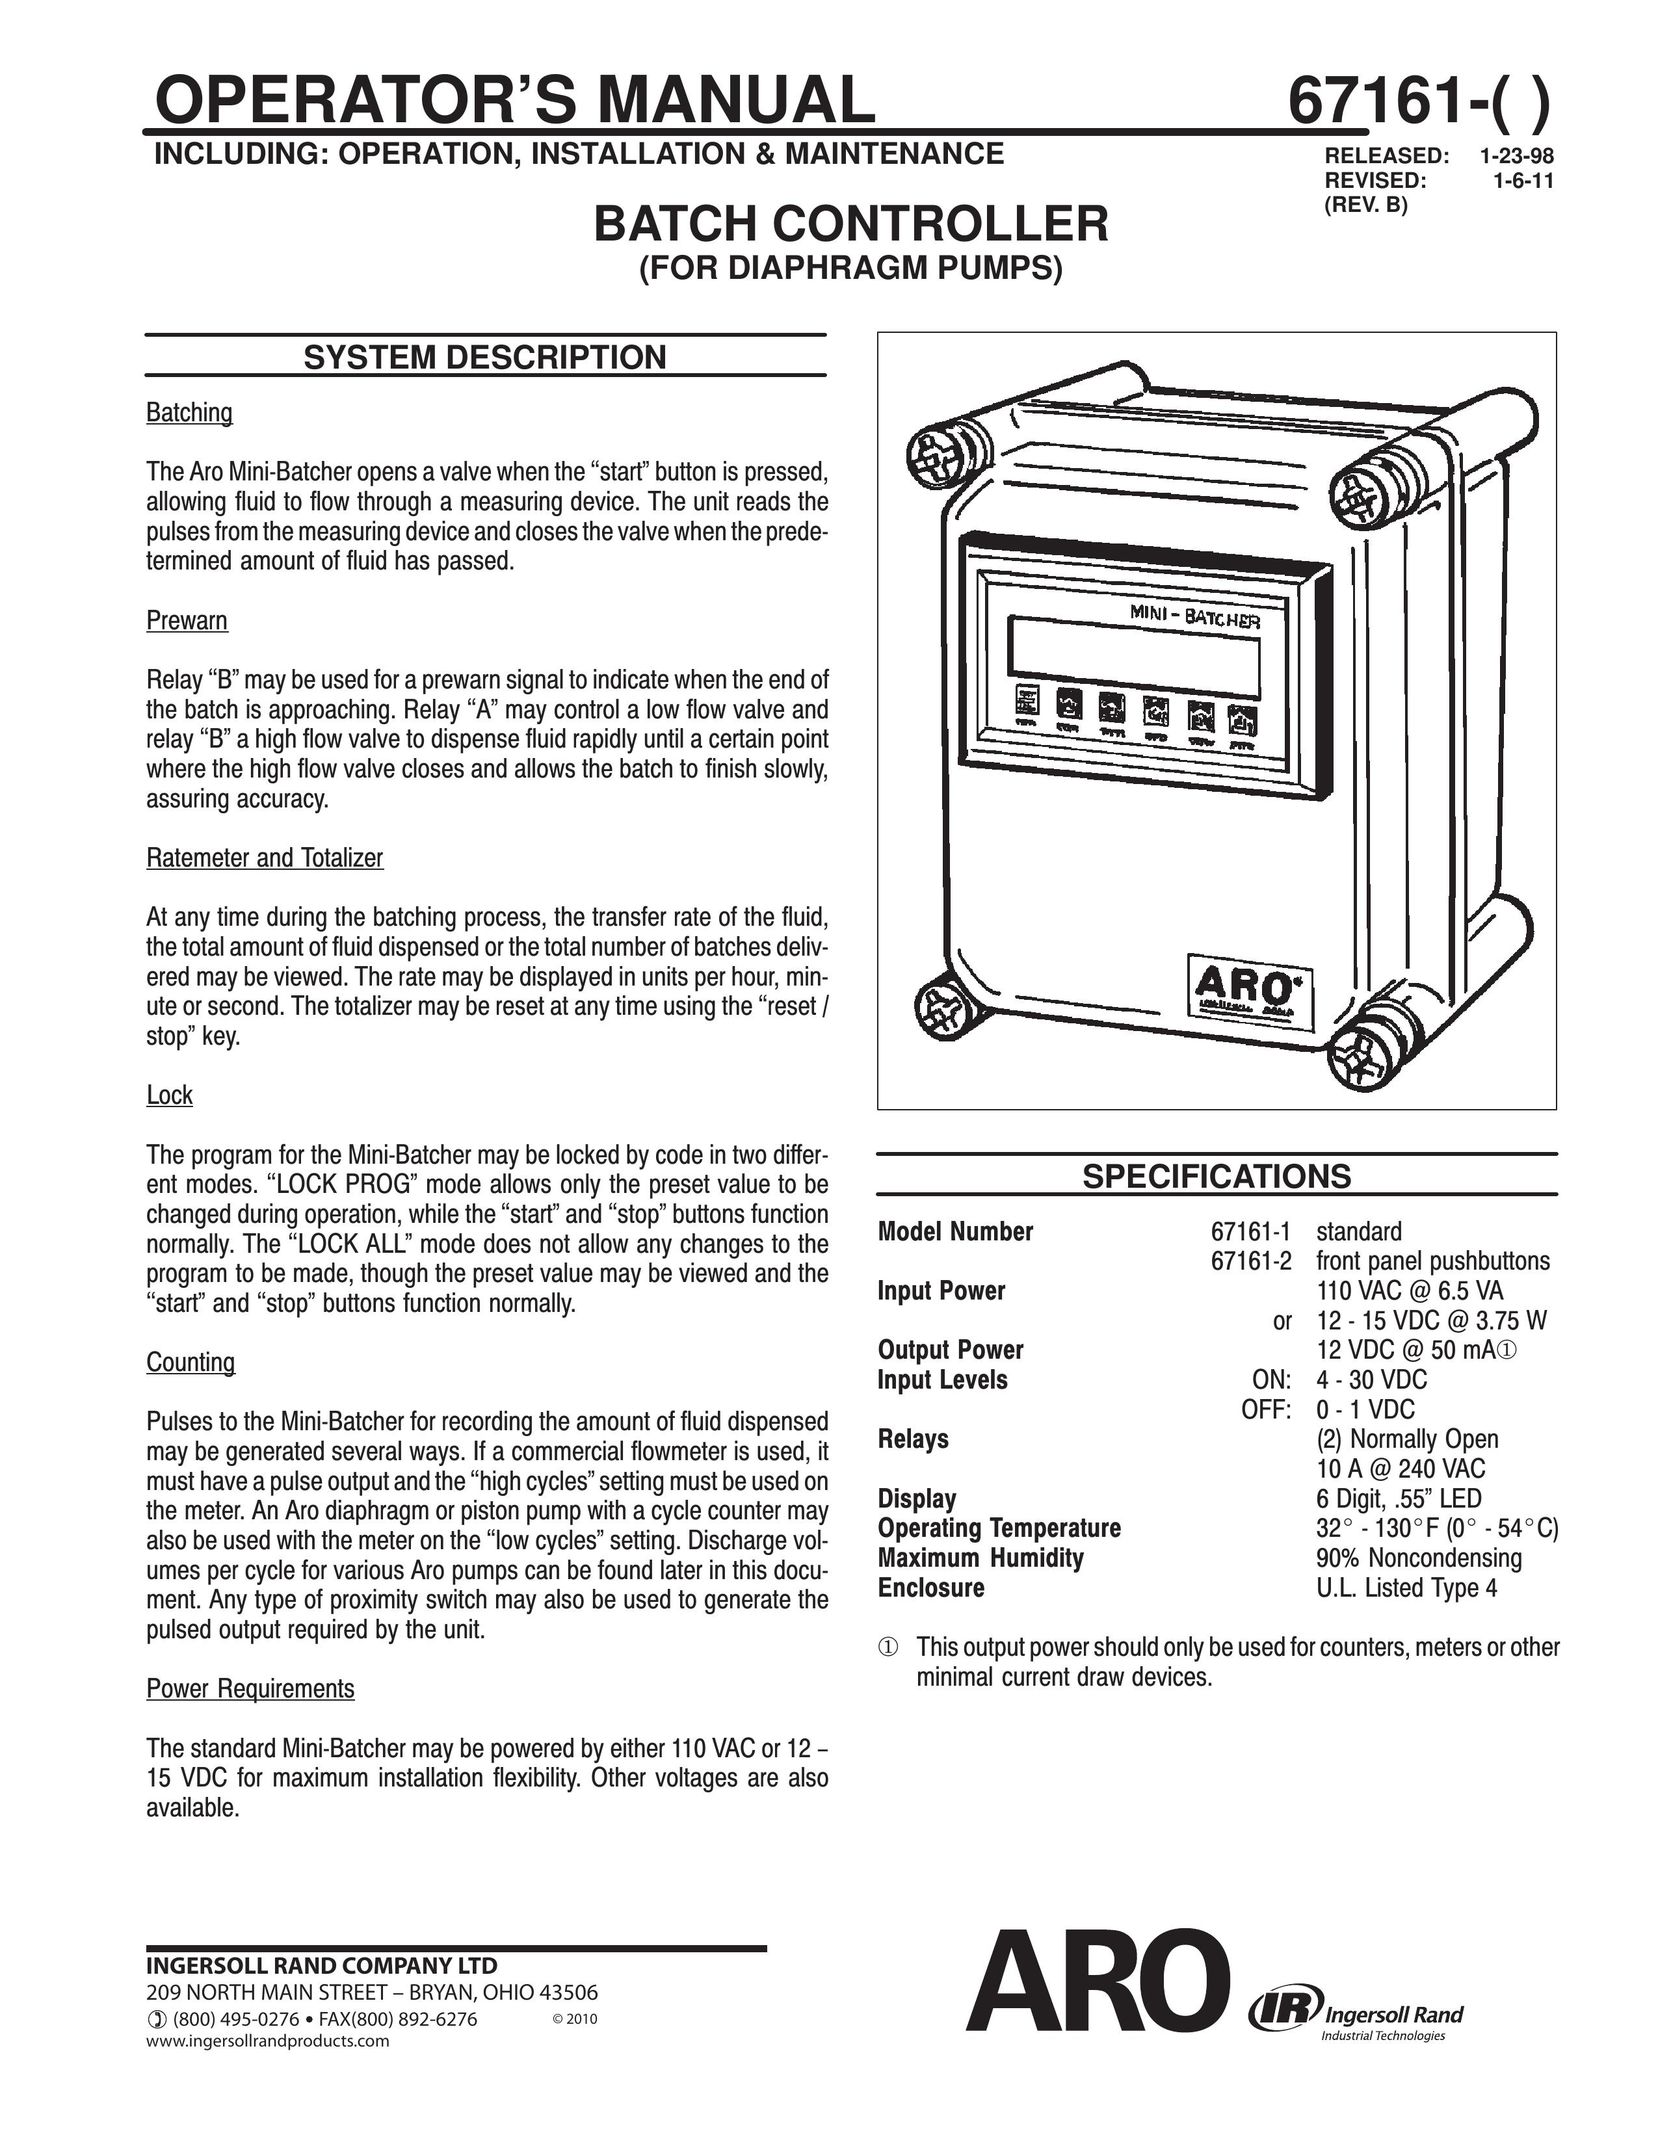 Ingersoll-Rand 67161-() Garbage Disposal User Manual